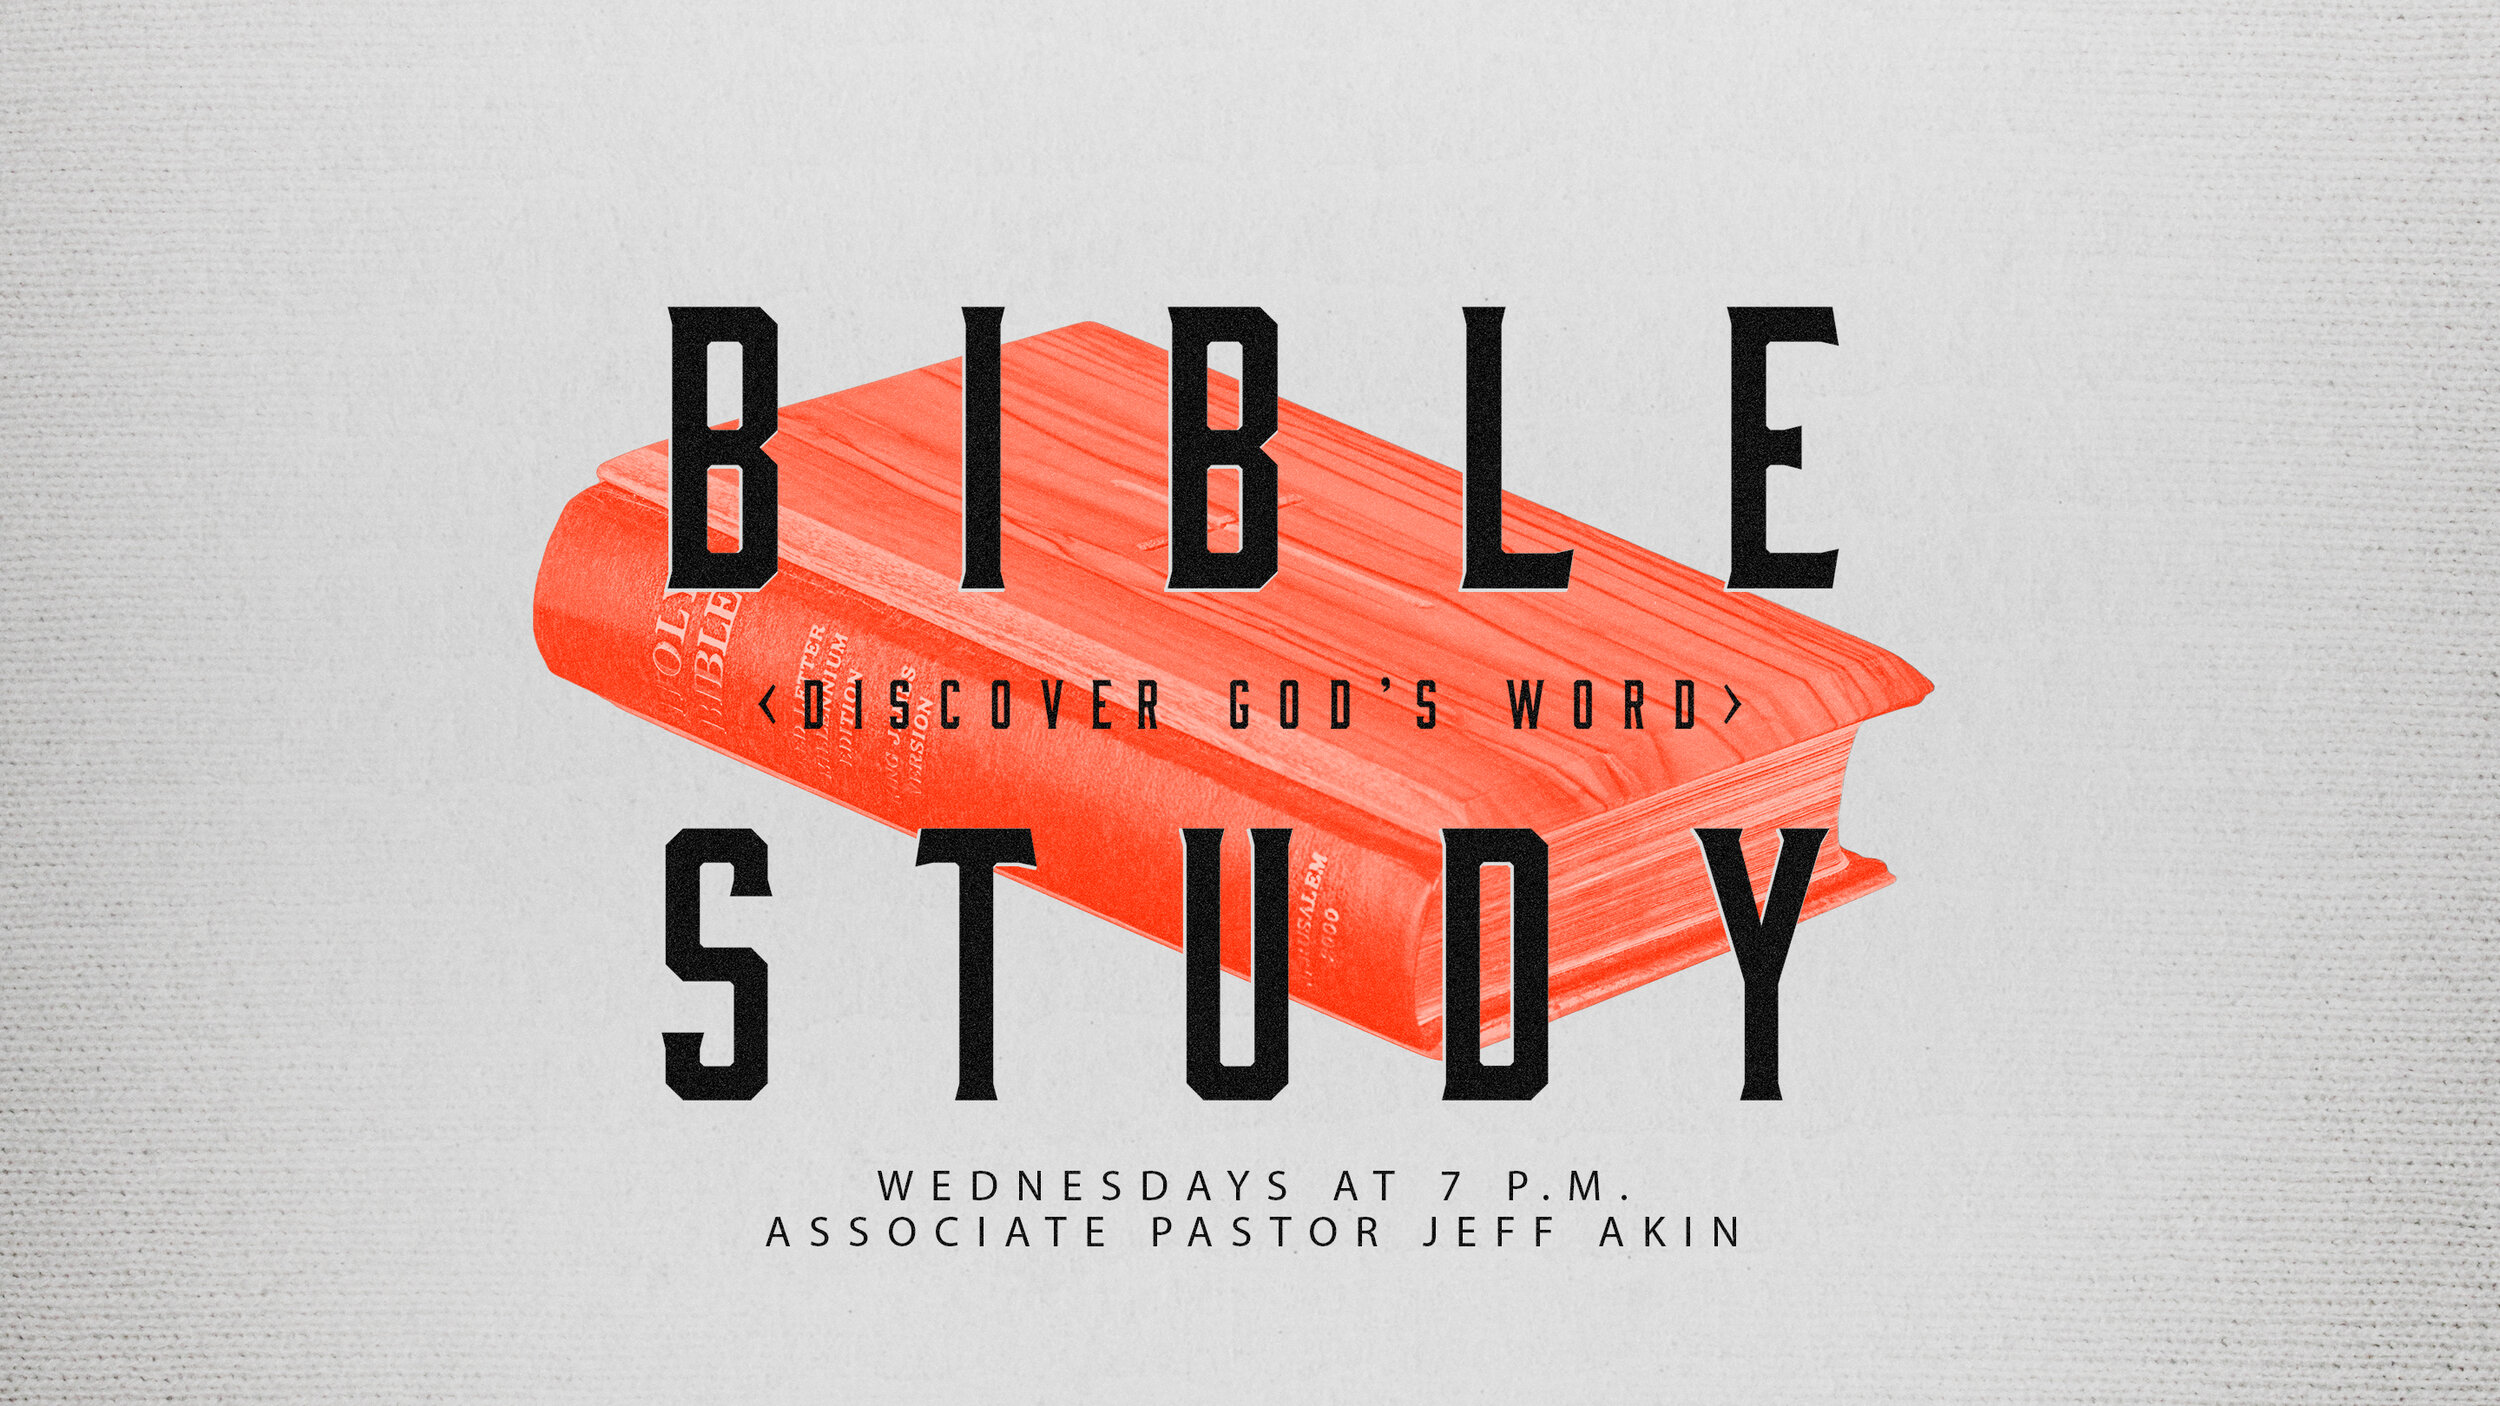 pcg-bible study.jpg